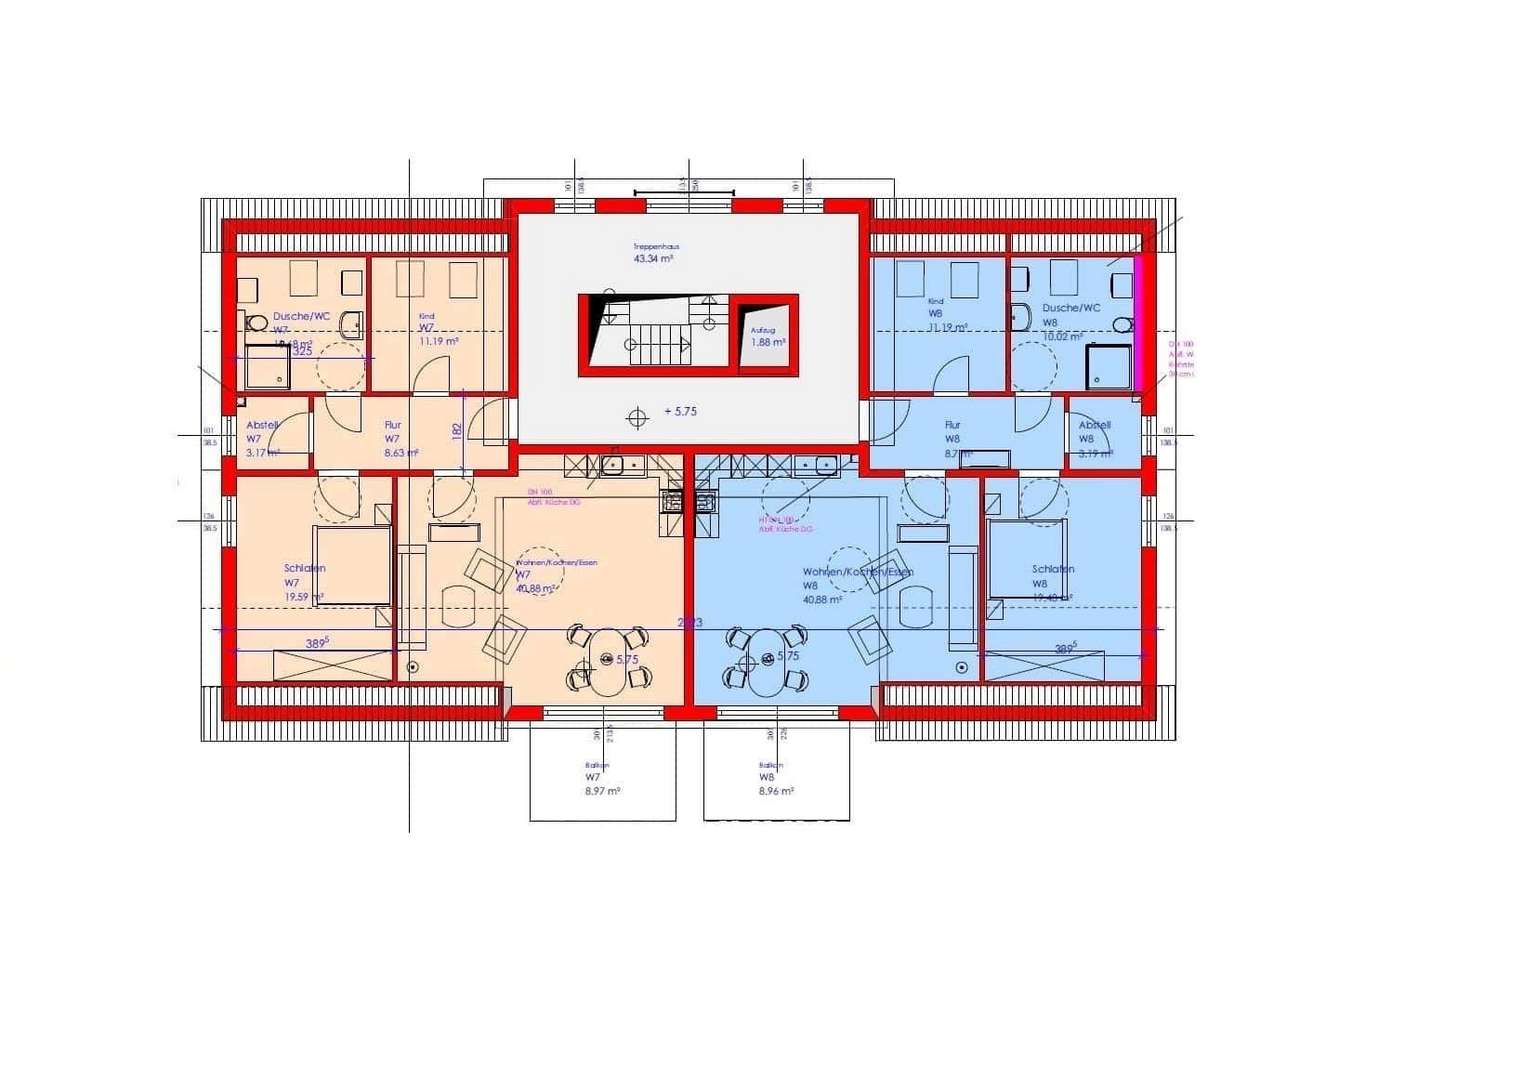 11110701-Grundriss DG - Dachgeschosswohnung in 37281 Wanfried mit 84m² kaufen